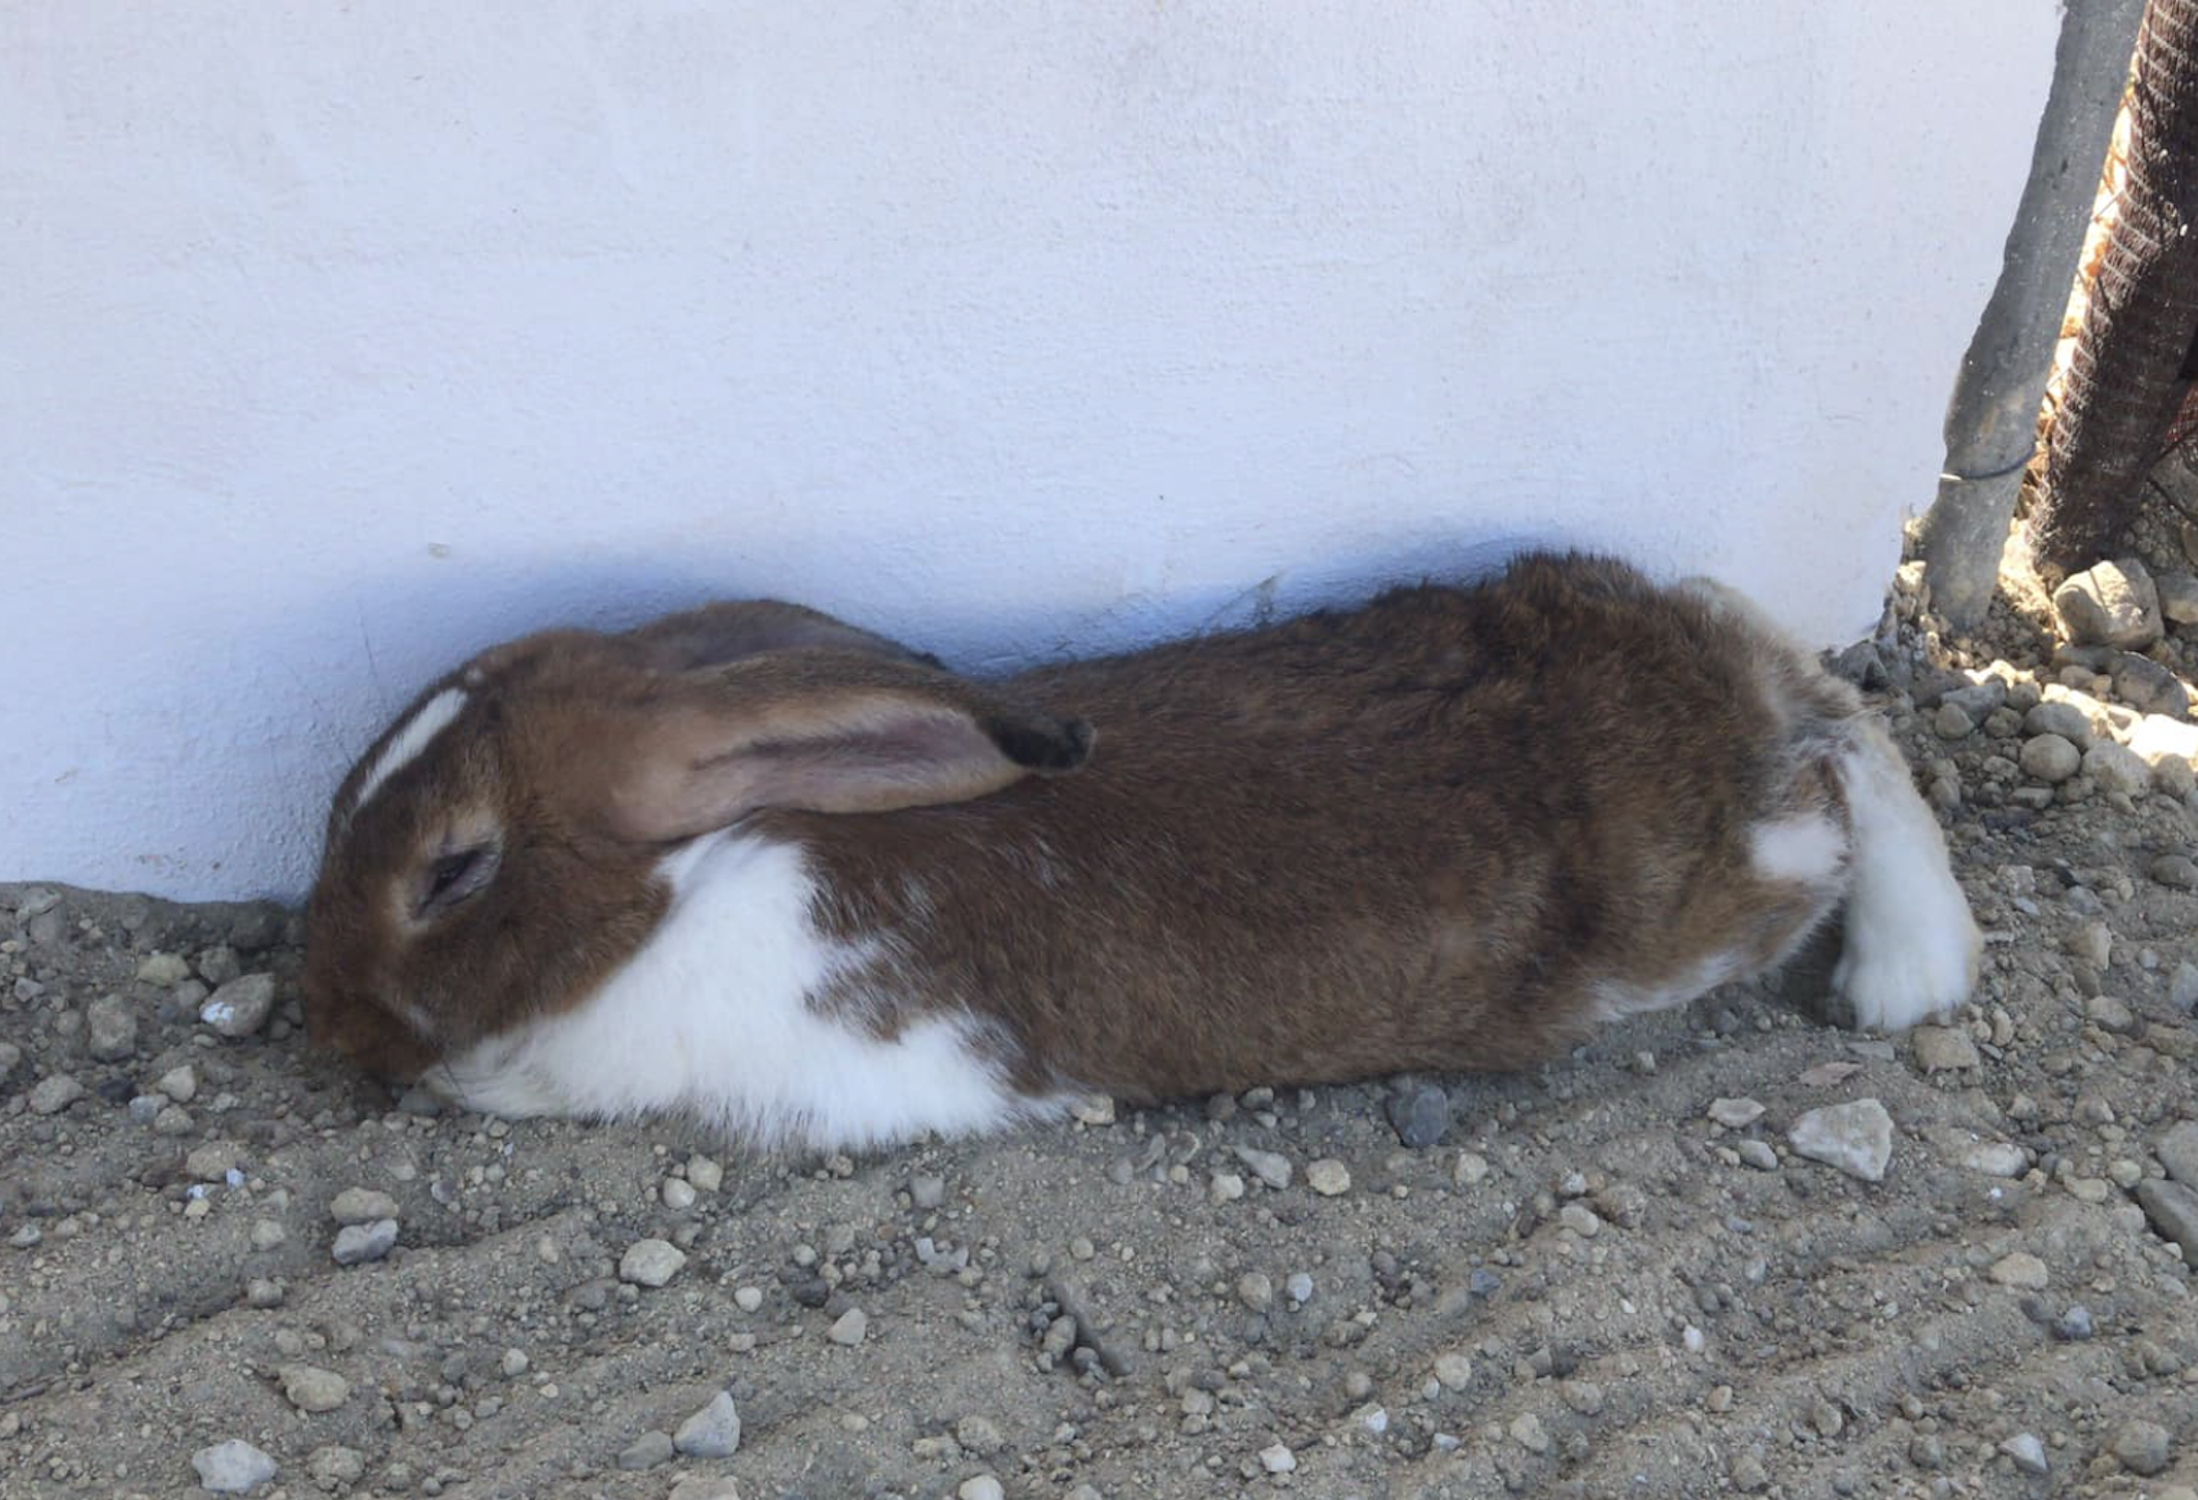  Un conejo en una imagen de archivo.  